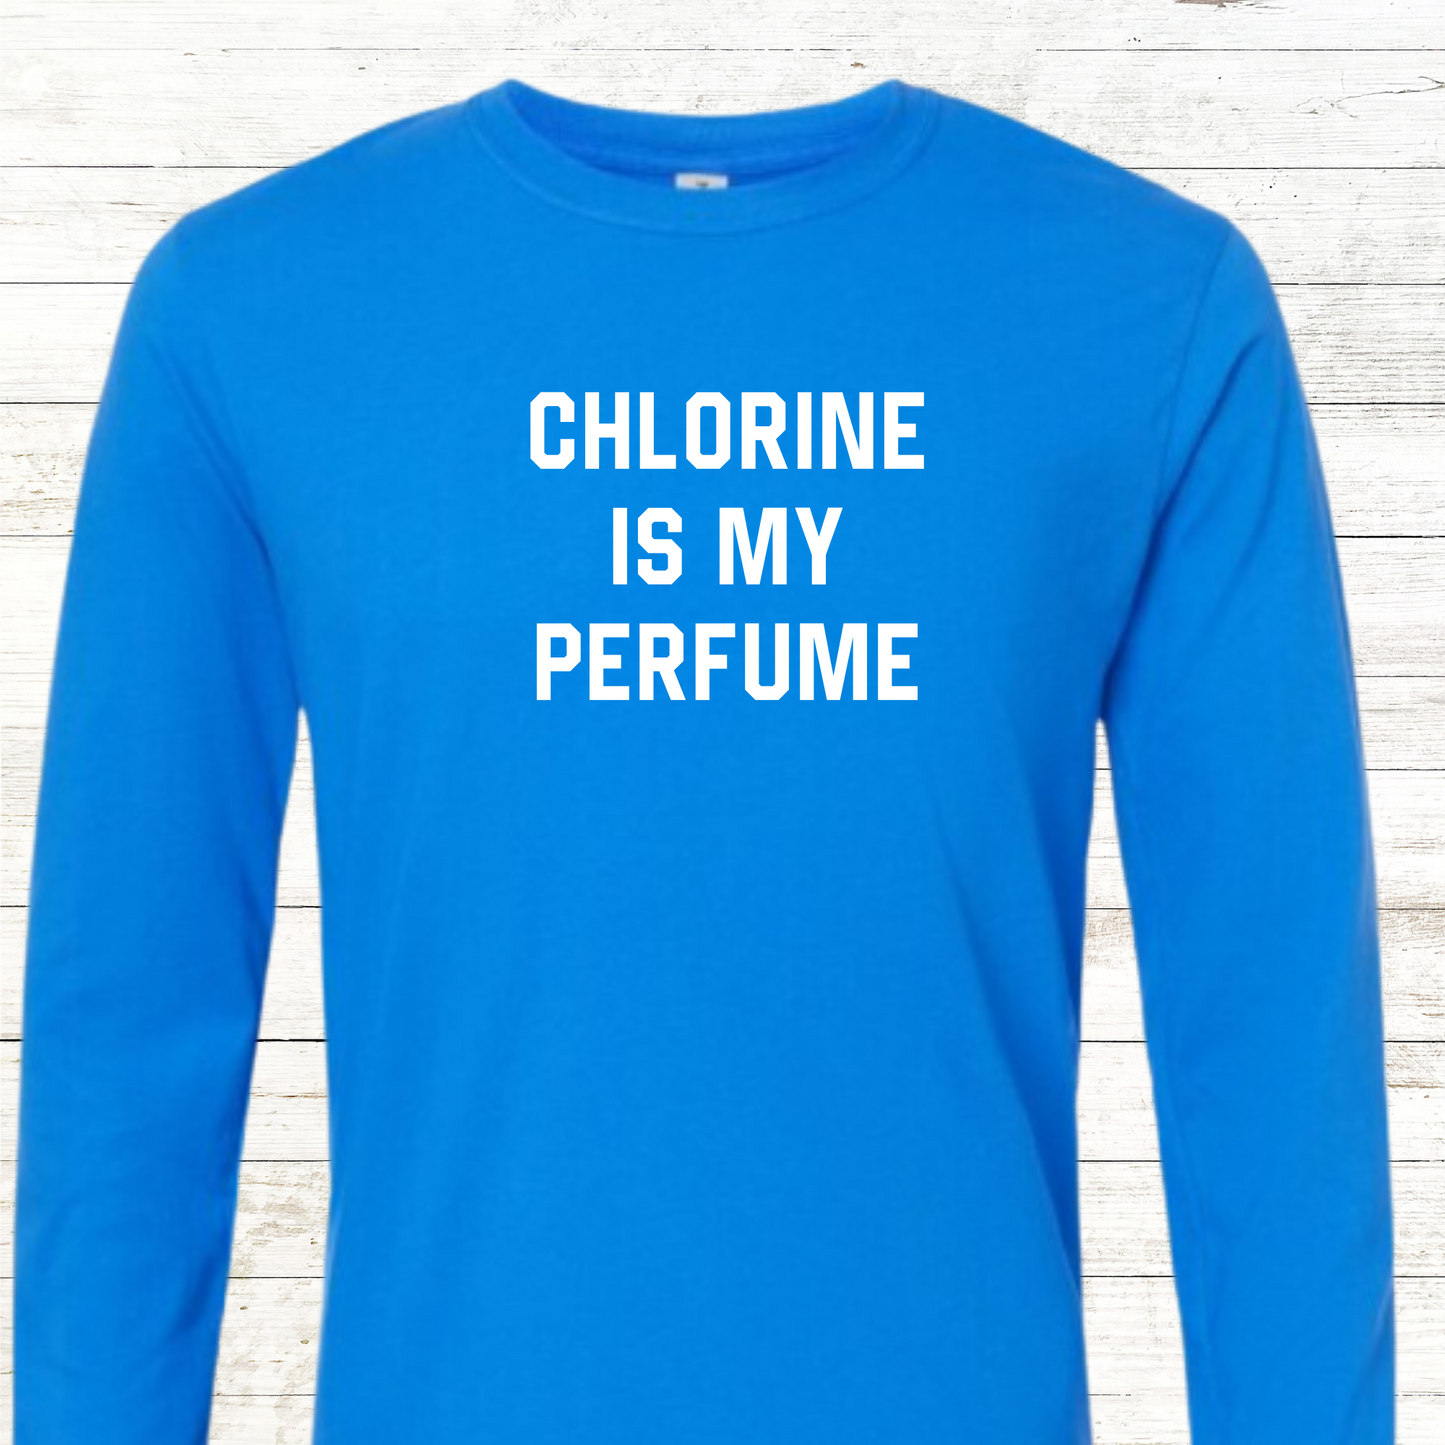 Chlorine is my Perfume